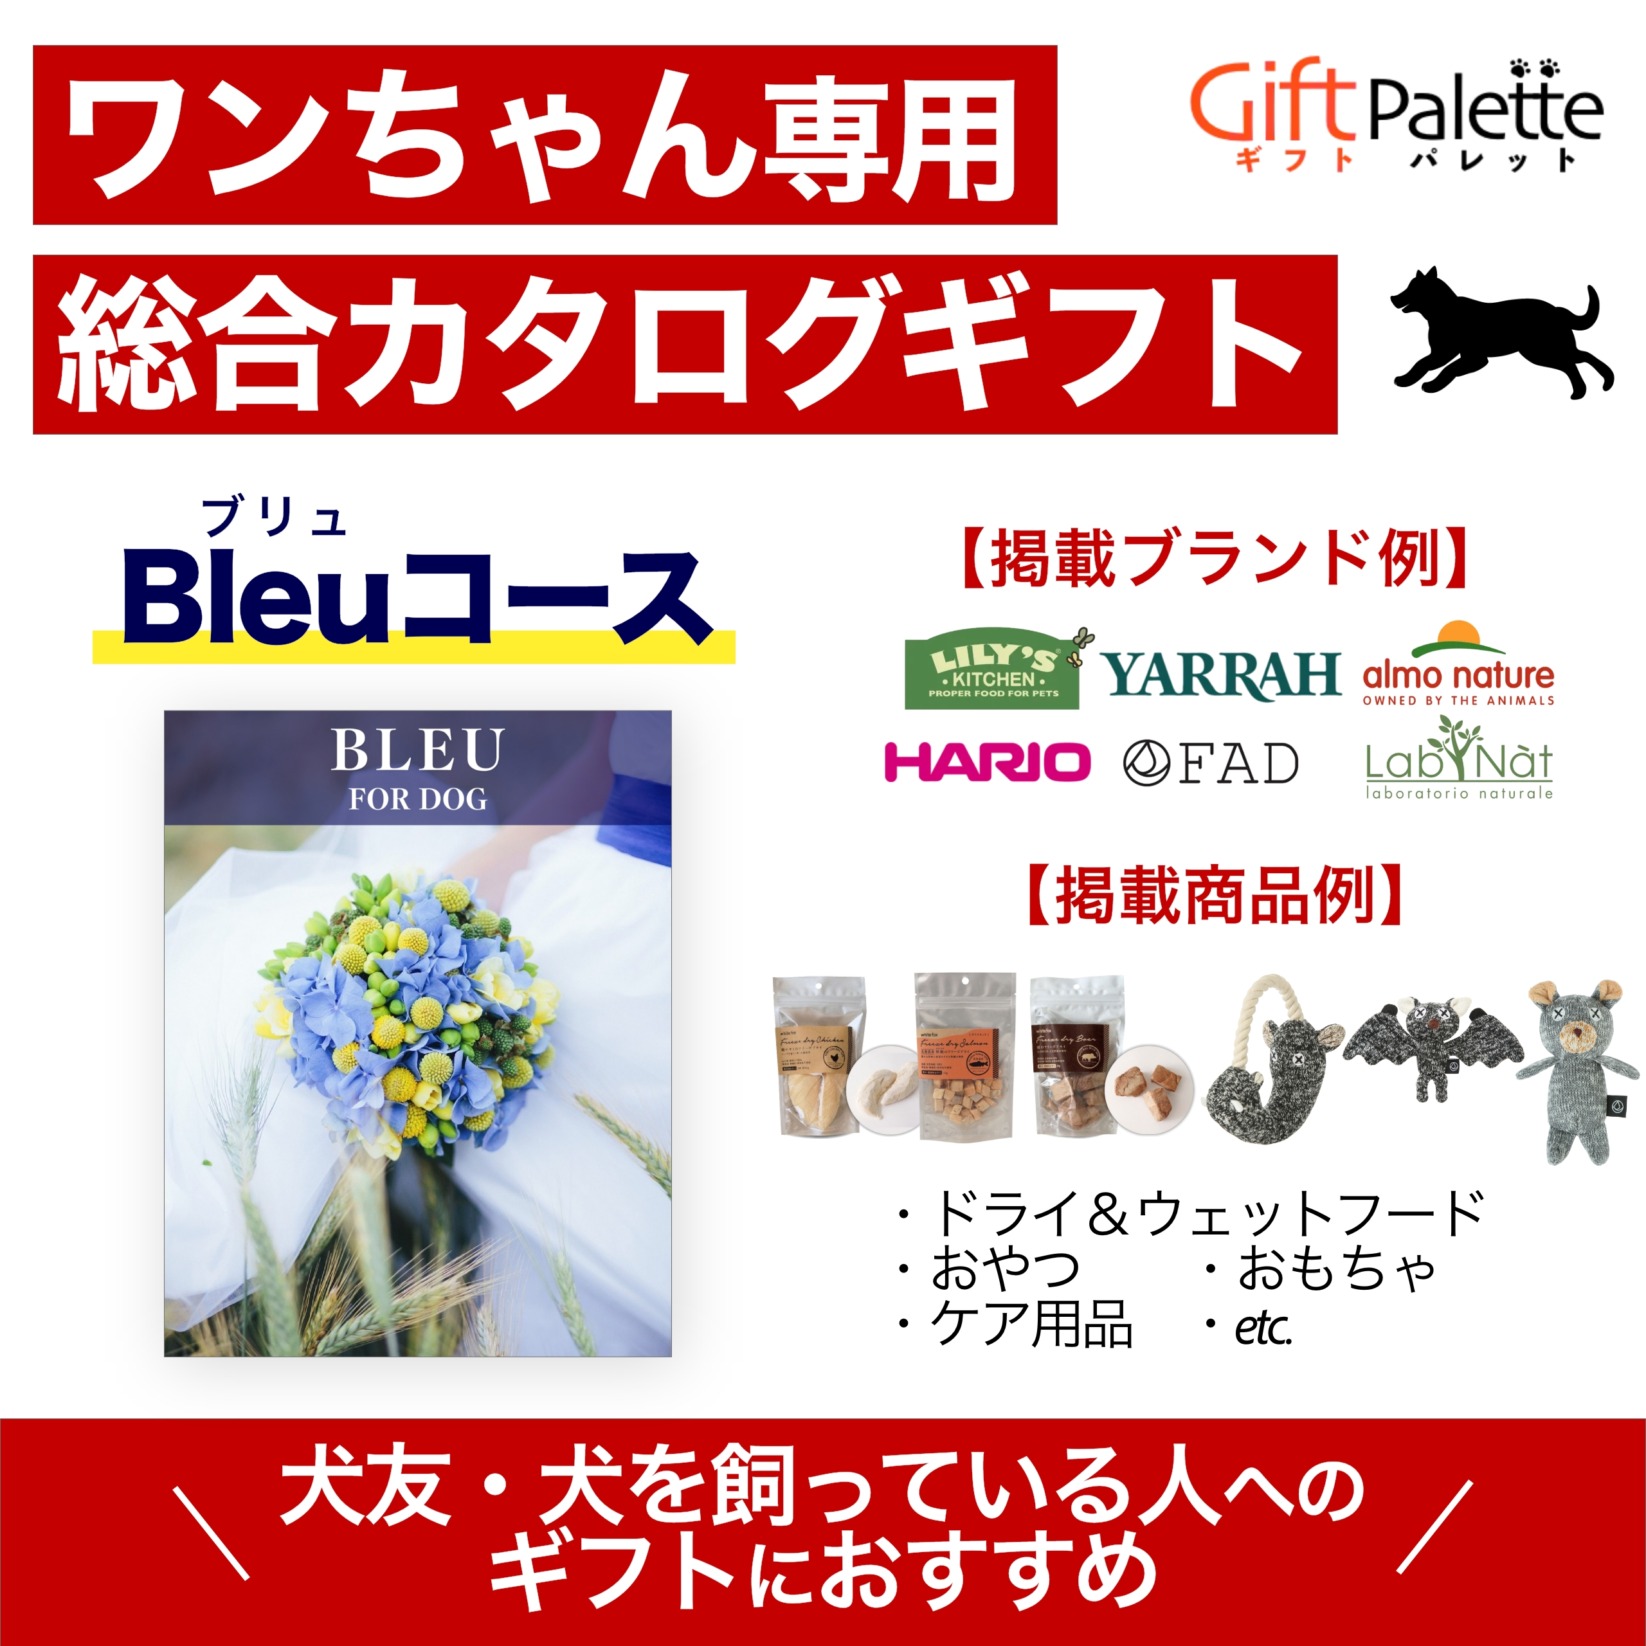 ワンちゃん向け総合オンラインカタログギフト – Bleuコース